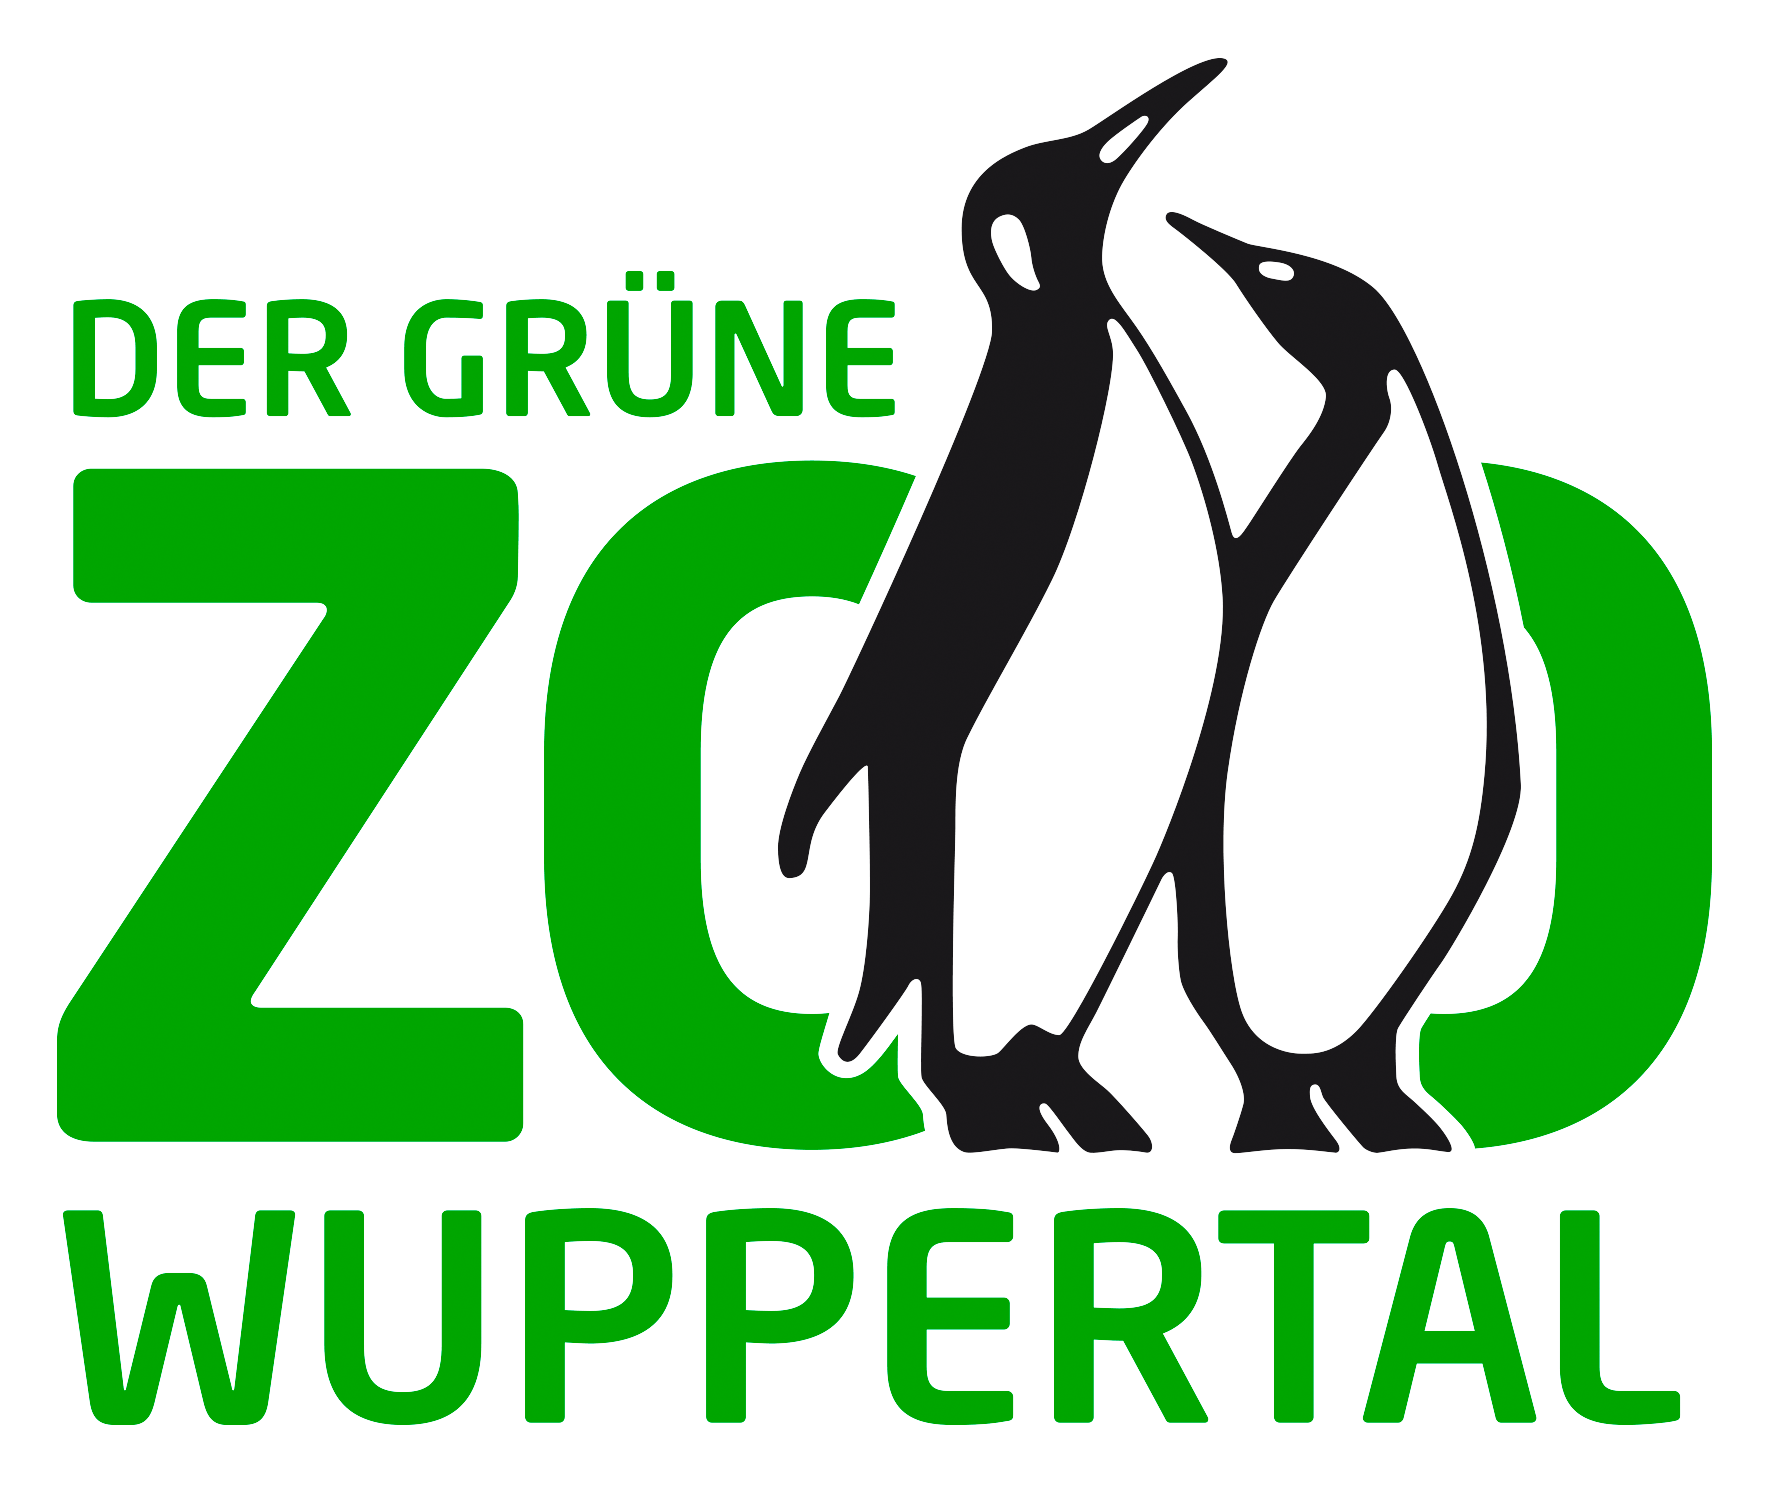 Der Grüne Zoo Wuppertal